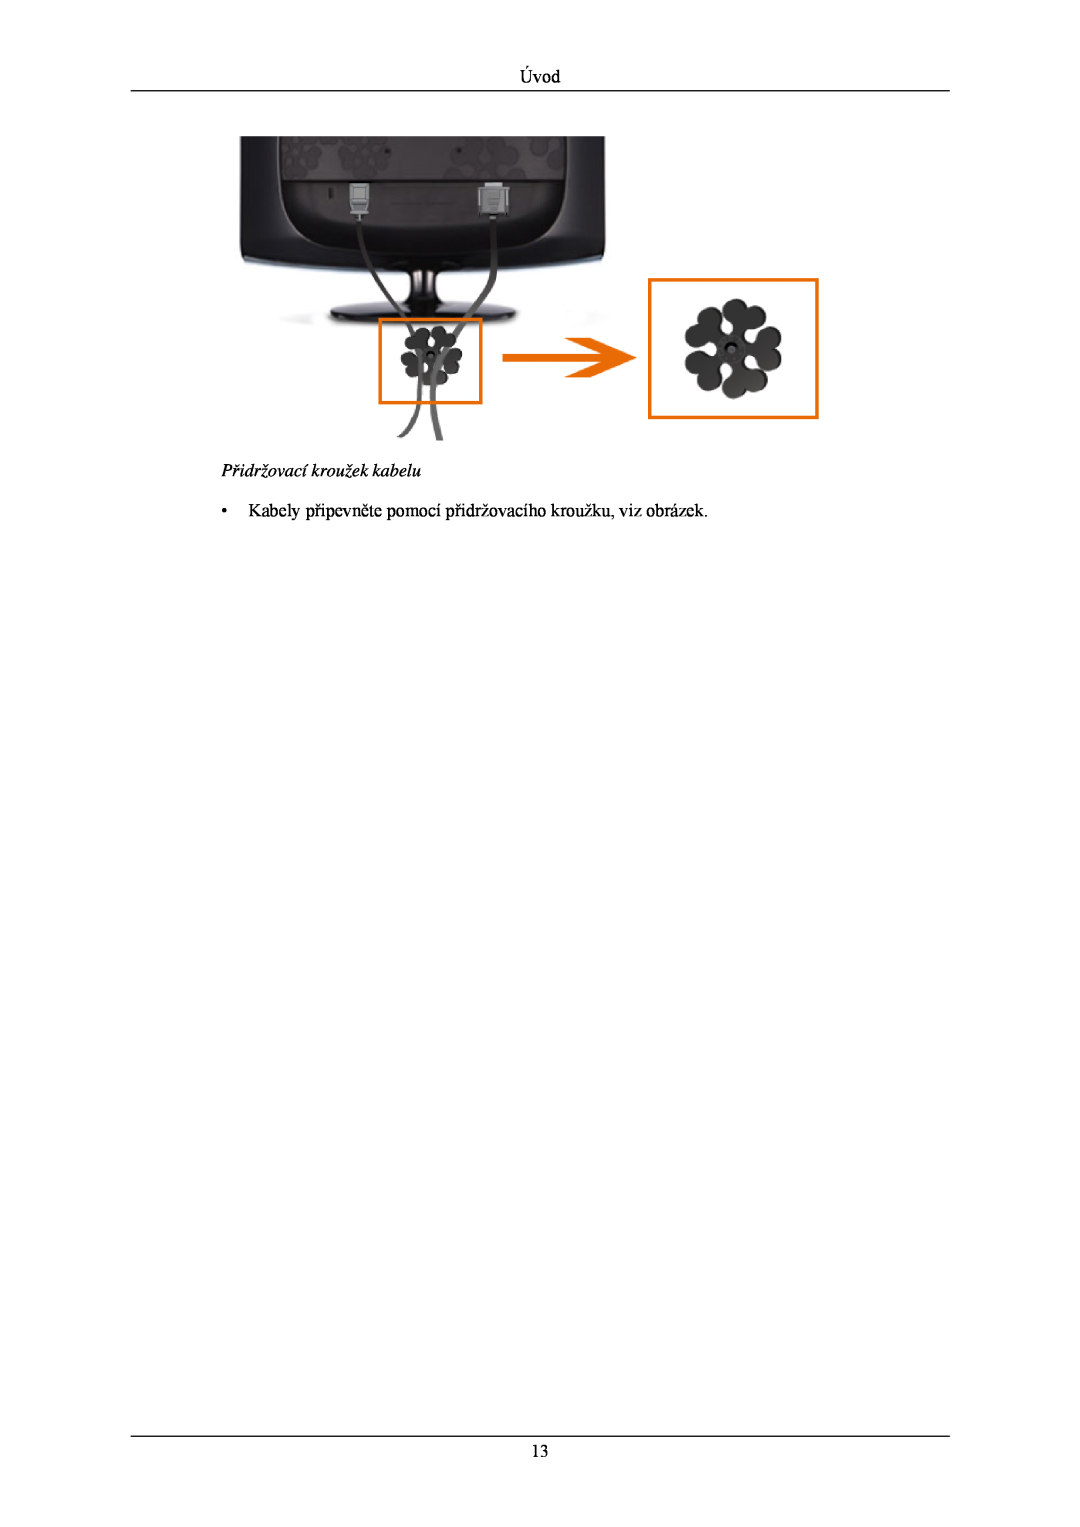 Samsung LS24CMKKFV/EN manual Úvod, Přidržovací kroužek kabelu, Kabely připevněte pomocí přidržovacího kroužku, viz obrázek 